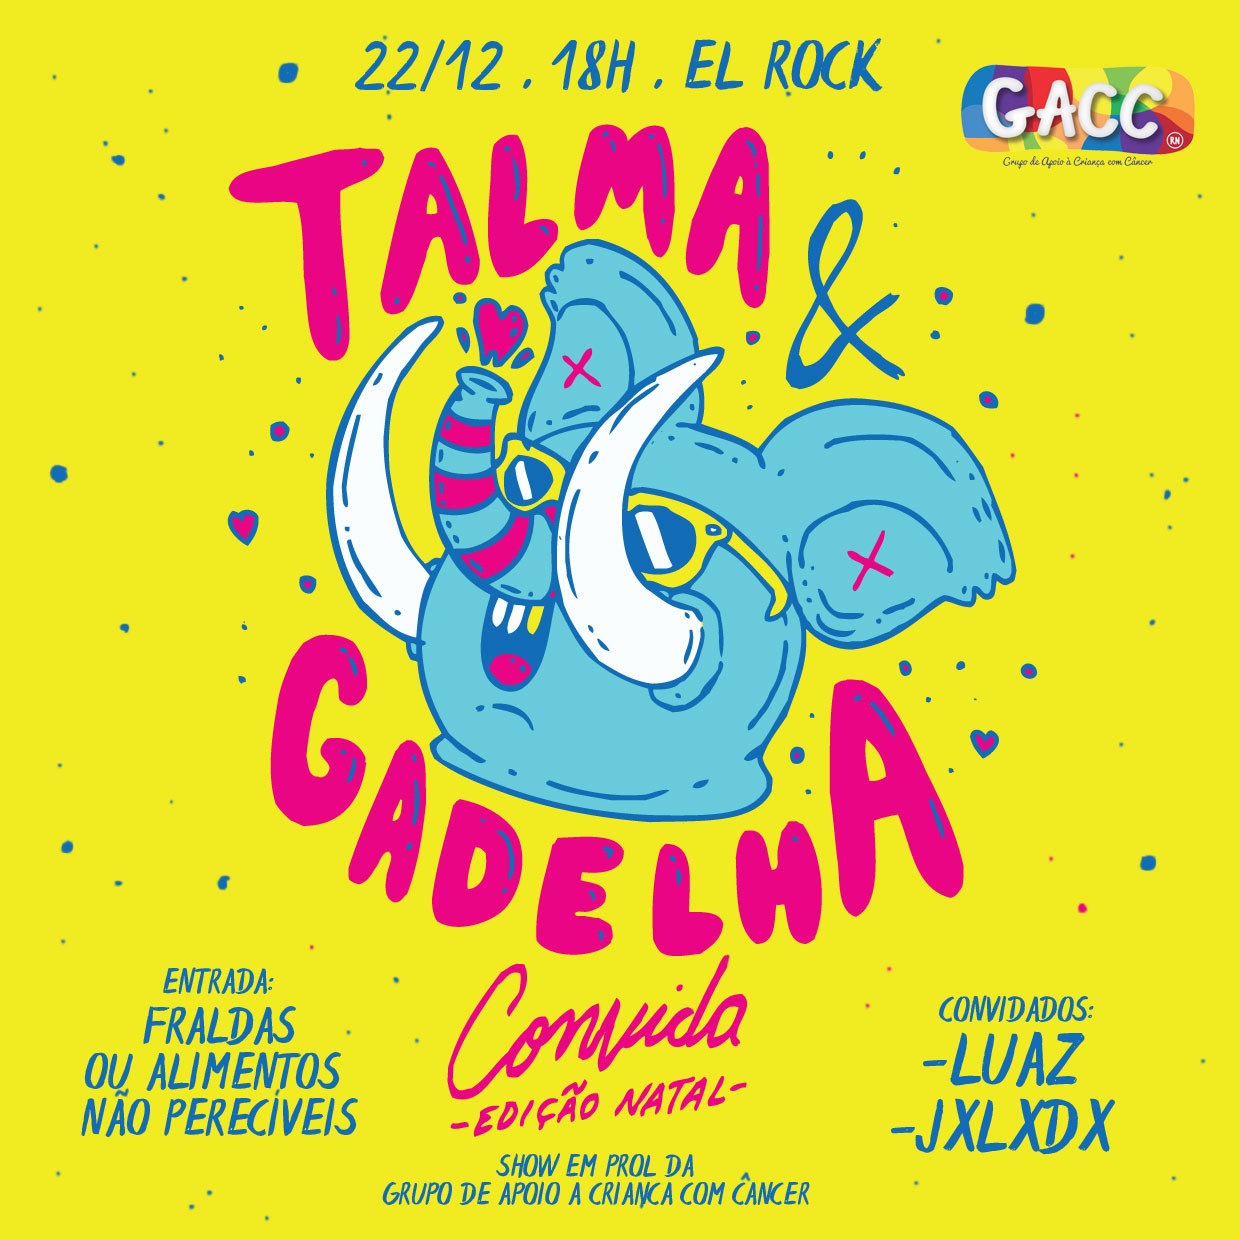 Talma & Gadelha, Joseph Little Drop e Luaz fazem show em apoio ao GACC